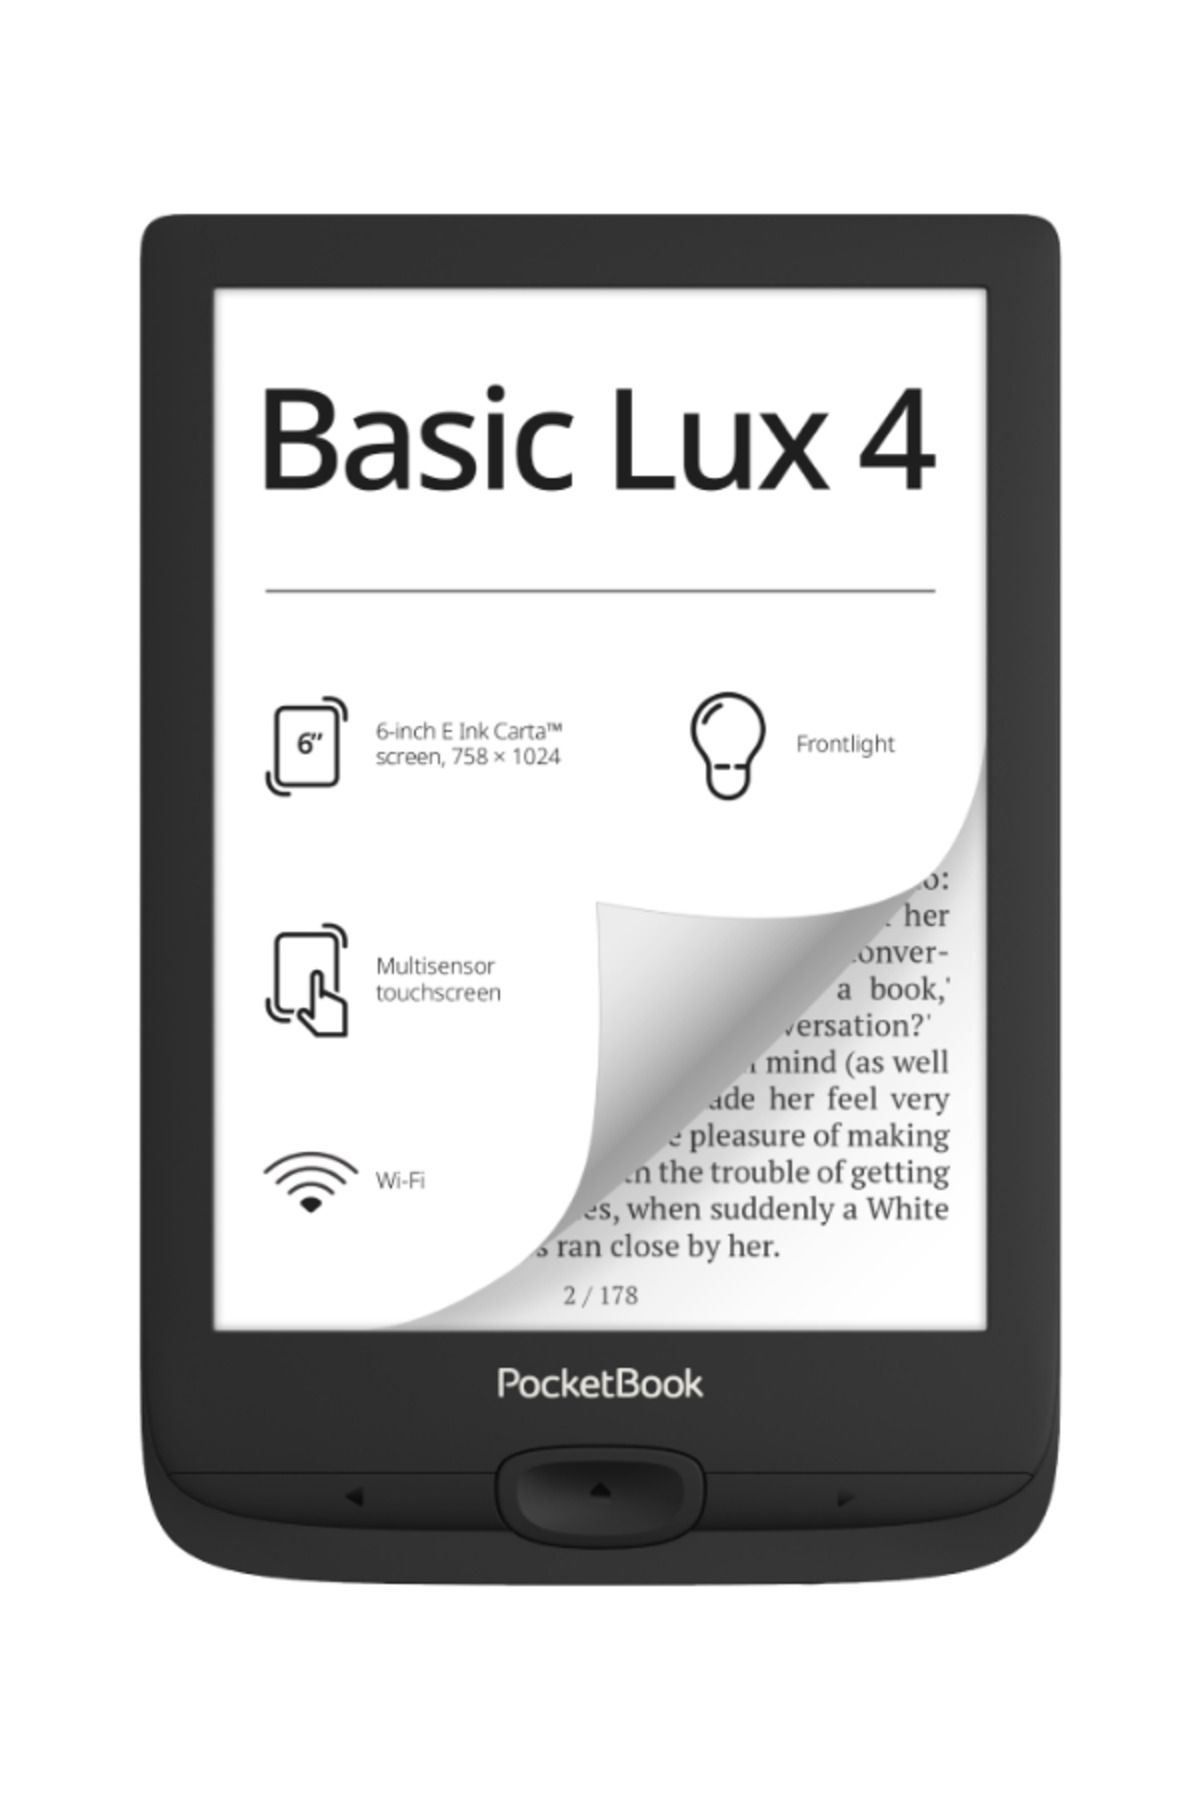 pocketbook Basic Lux 4